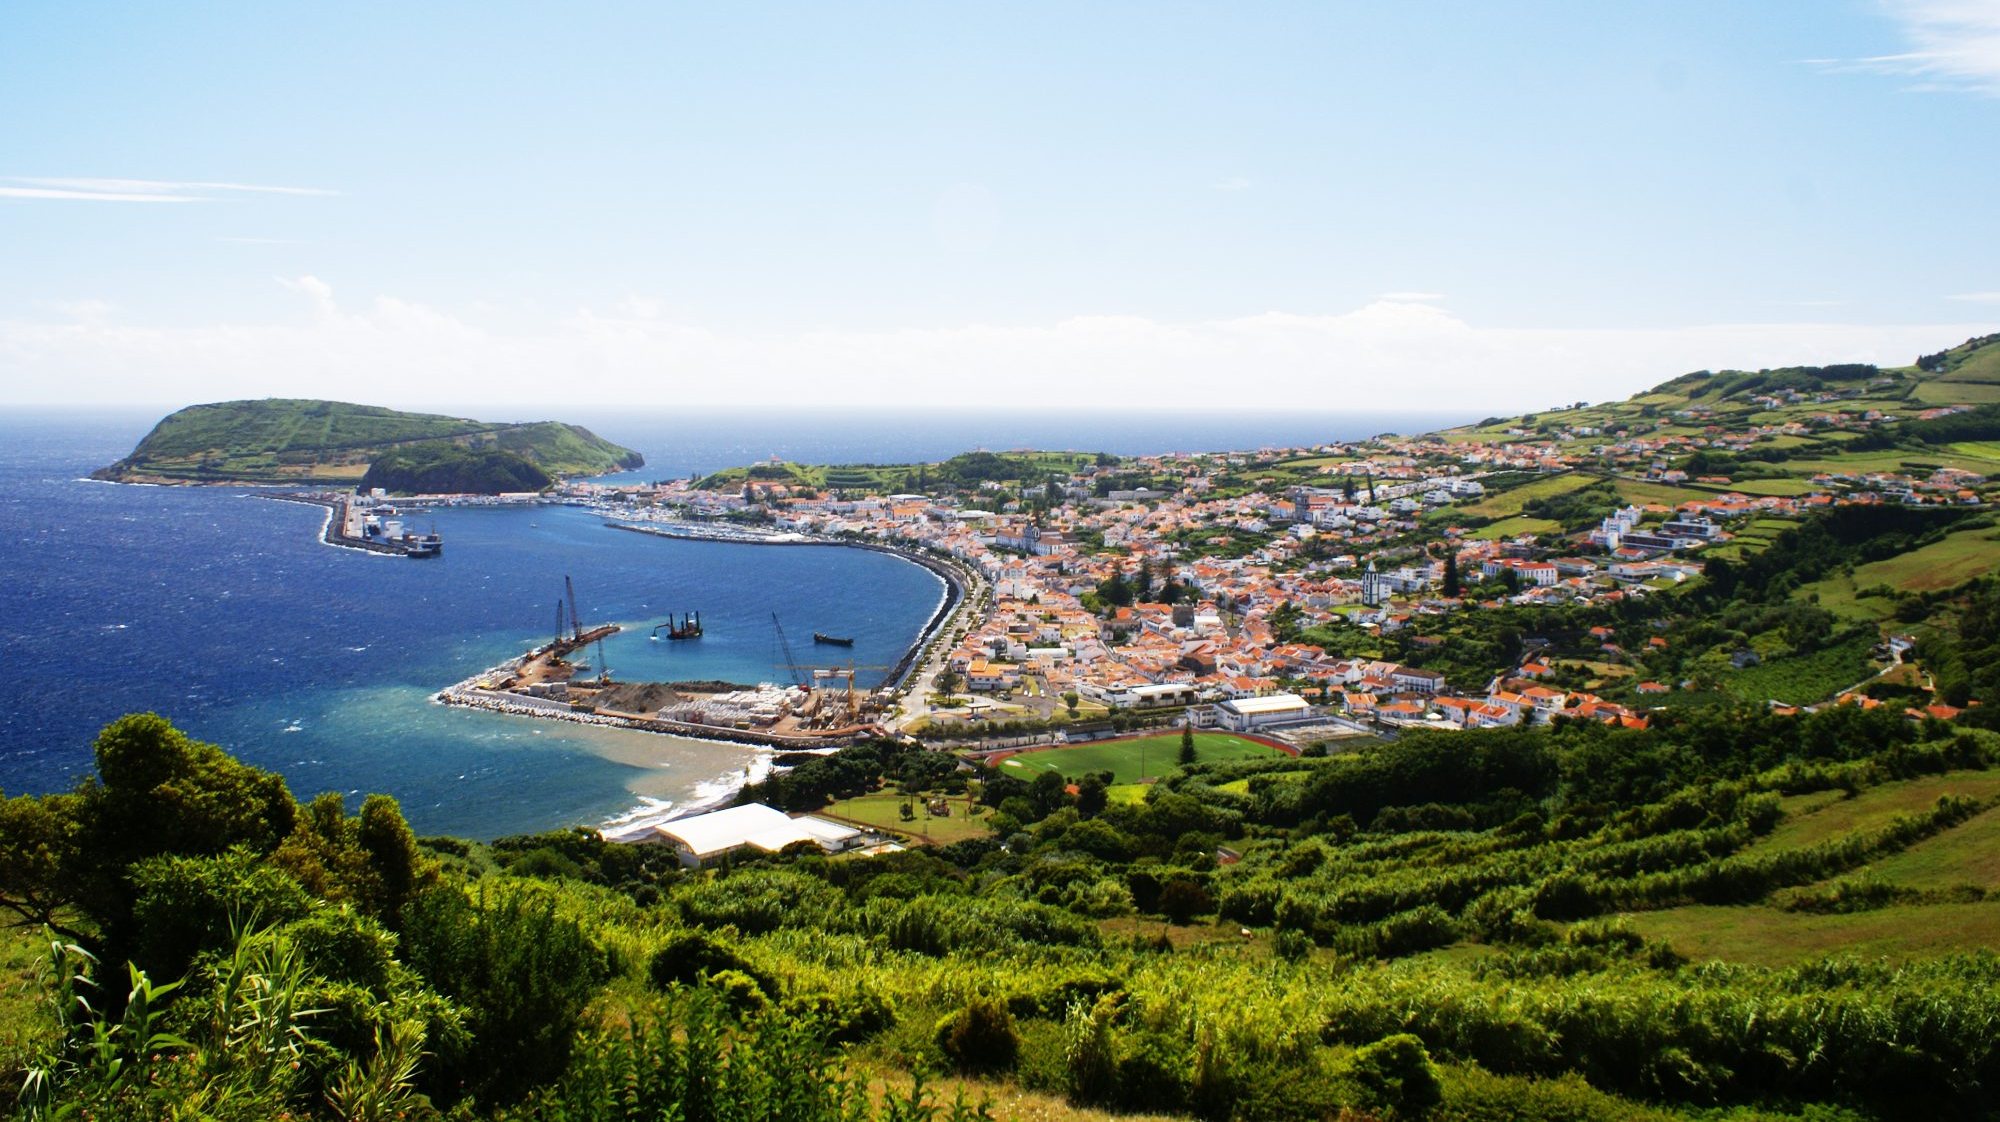 Na Praia Porto do Pim na Horta, Açores, a bandeira azul deu lugar à bandeira vermelha após análises à qualidade da água